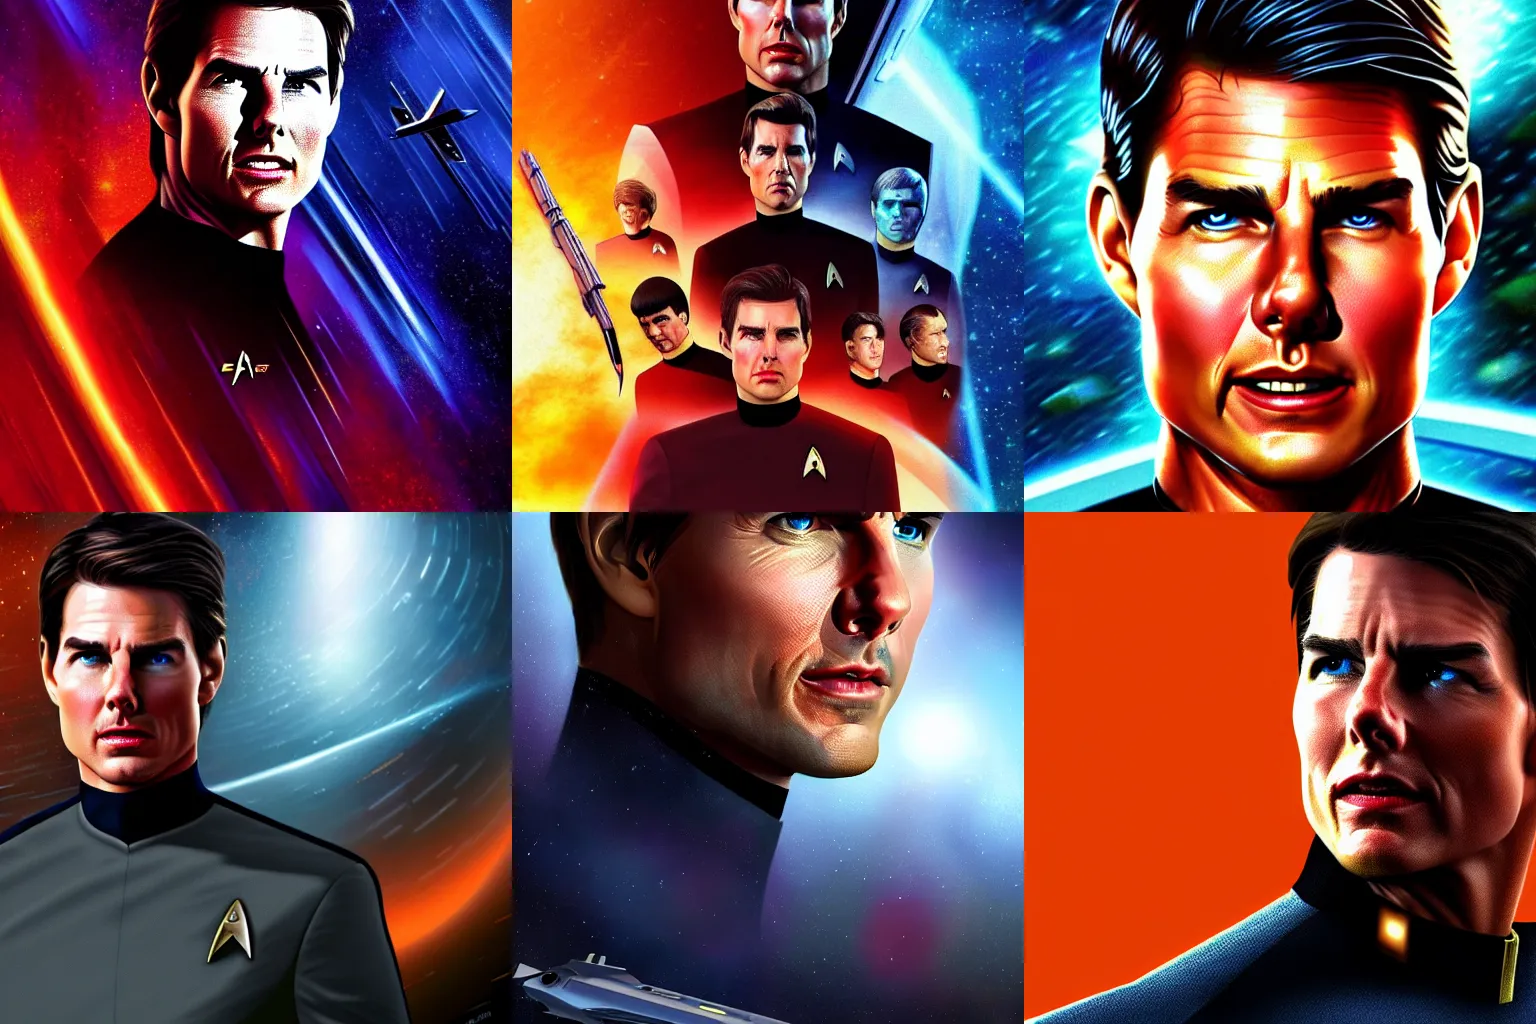 Prompt: Tom Cruise in Star Trek, epic, 4k resolution, extremely detailed, very sharp, artstation, digital art, vibrant